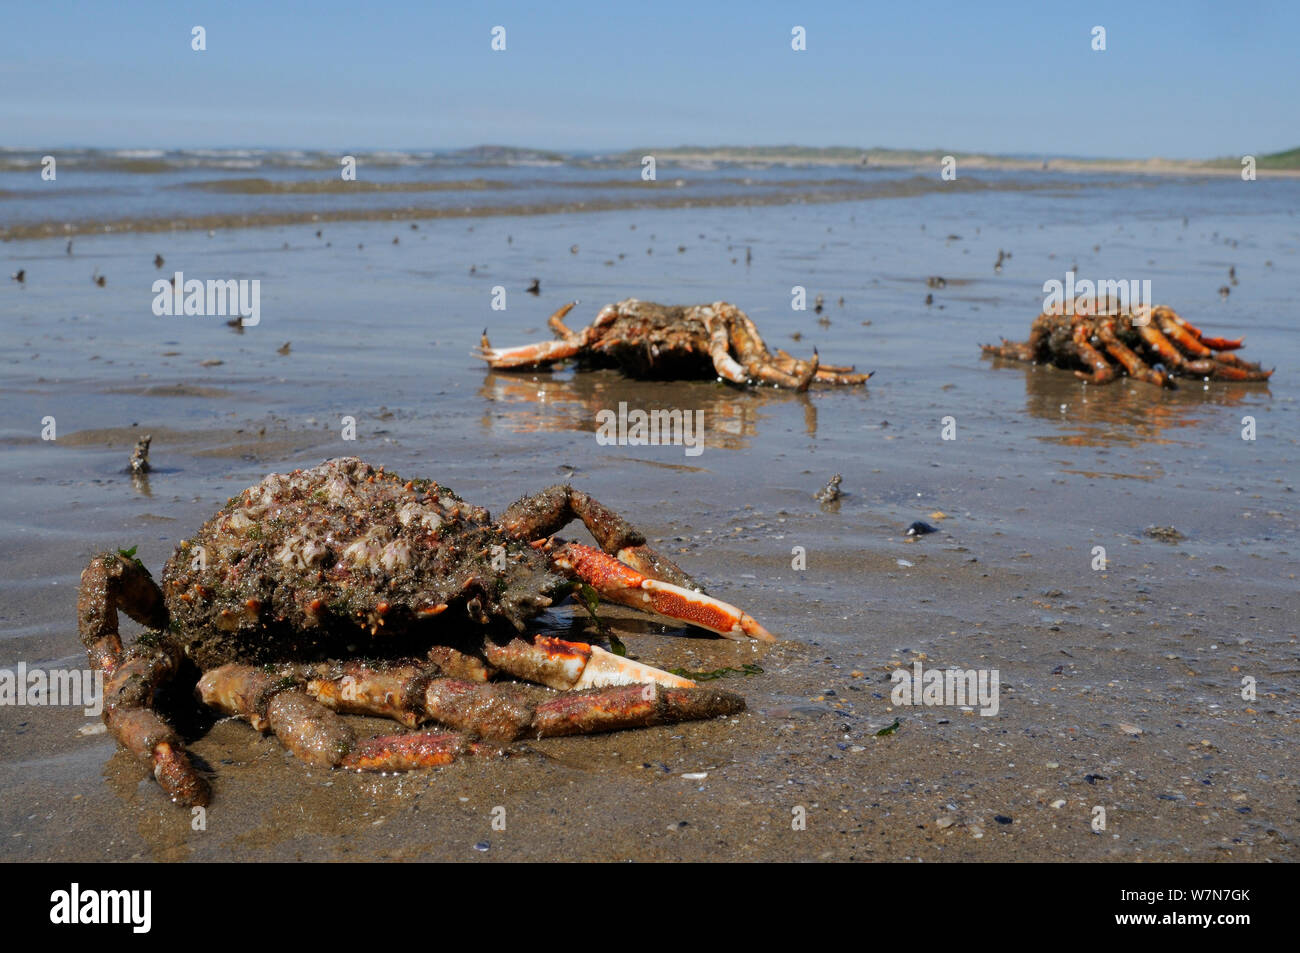 Muda caparazones y patas de cangrejo araña común / Spiny centollo (Maja brachydactyla / Maja squinado) varada en la playa de arena. Rhossili Bay, la Península de Gower, REINO UNIDO, Julio. Foto de stock